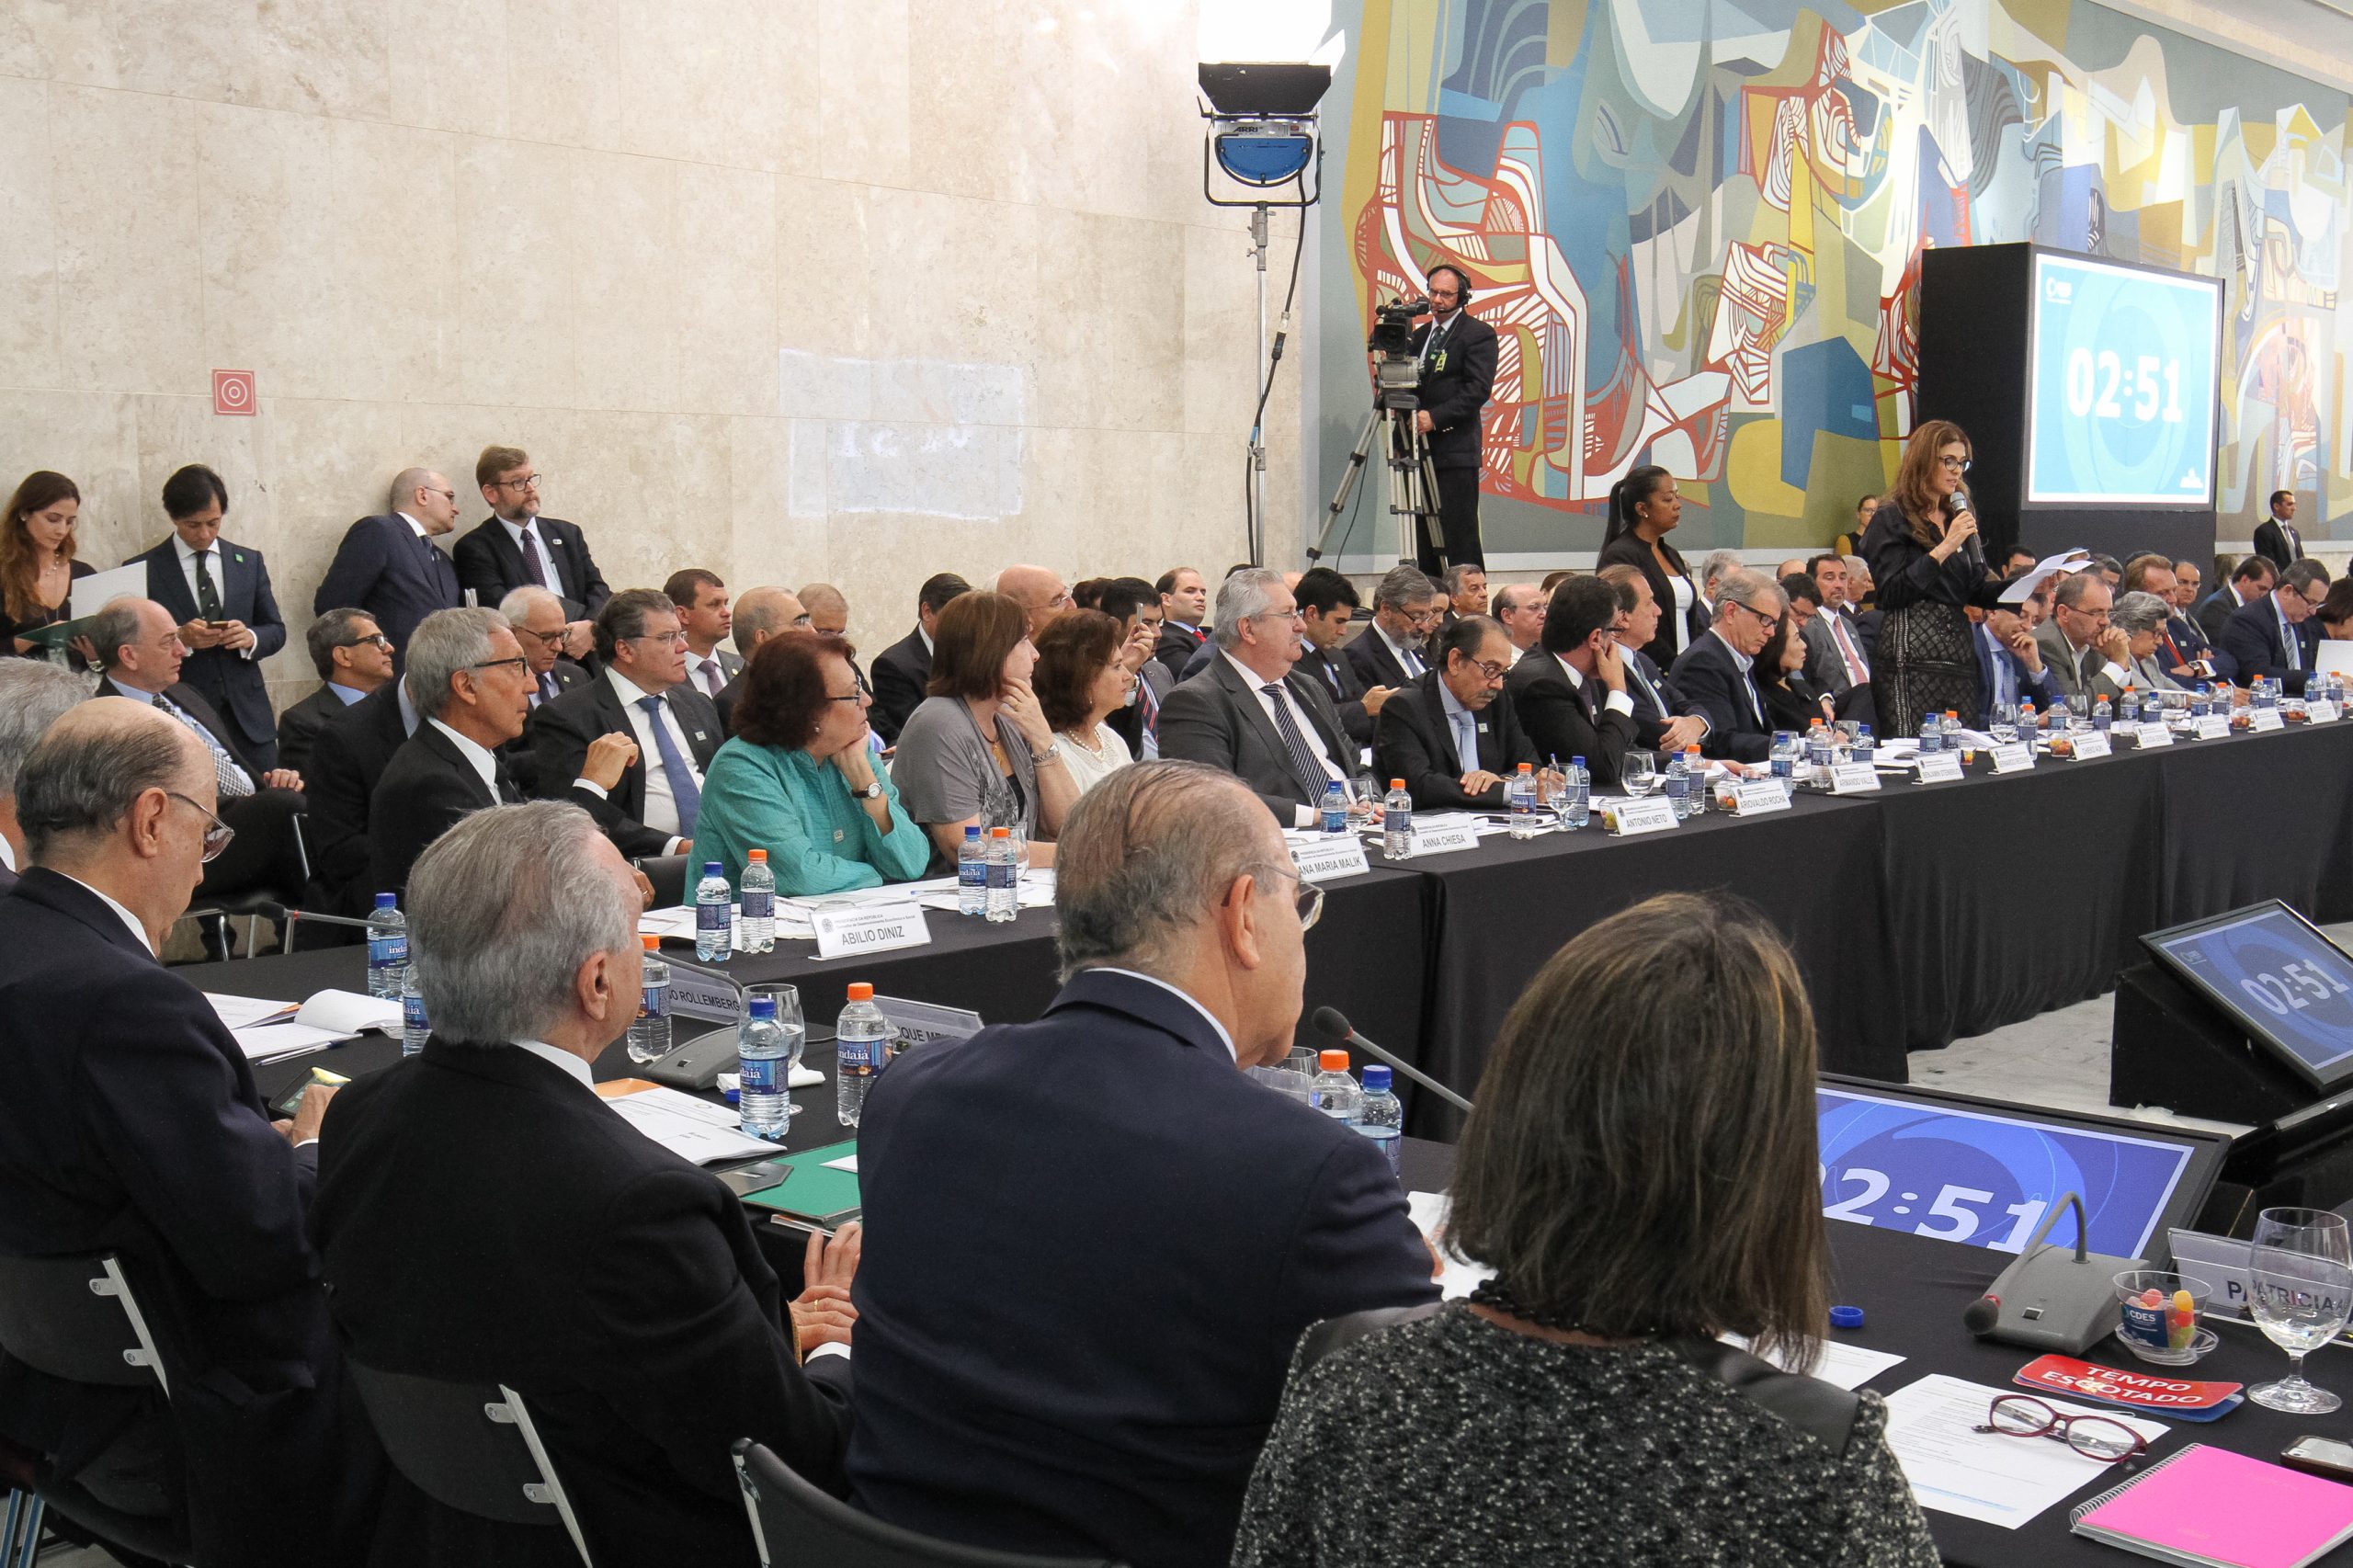 Brasília - DF, 21/11/2016. Presidente Michel Temer durante reunião do CDES - Conselho de Desenvolvimento Econômico Social. Foto: Alan Santos/PR